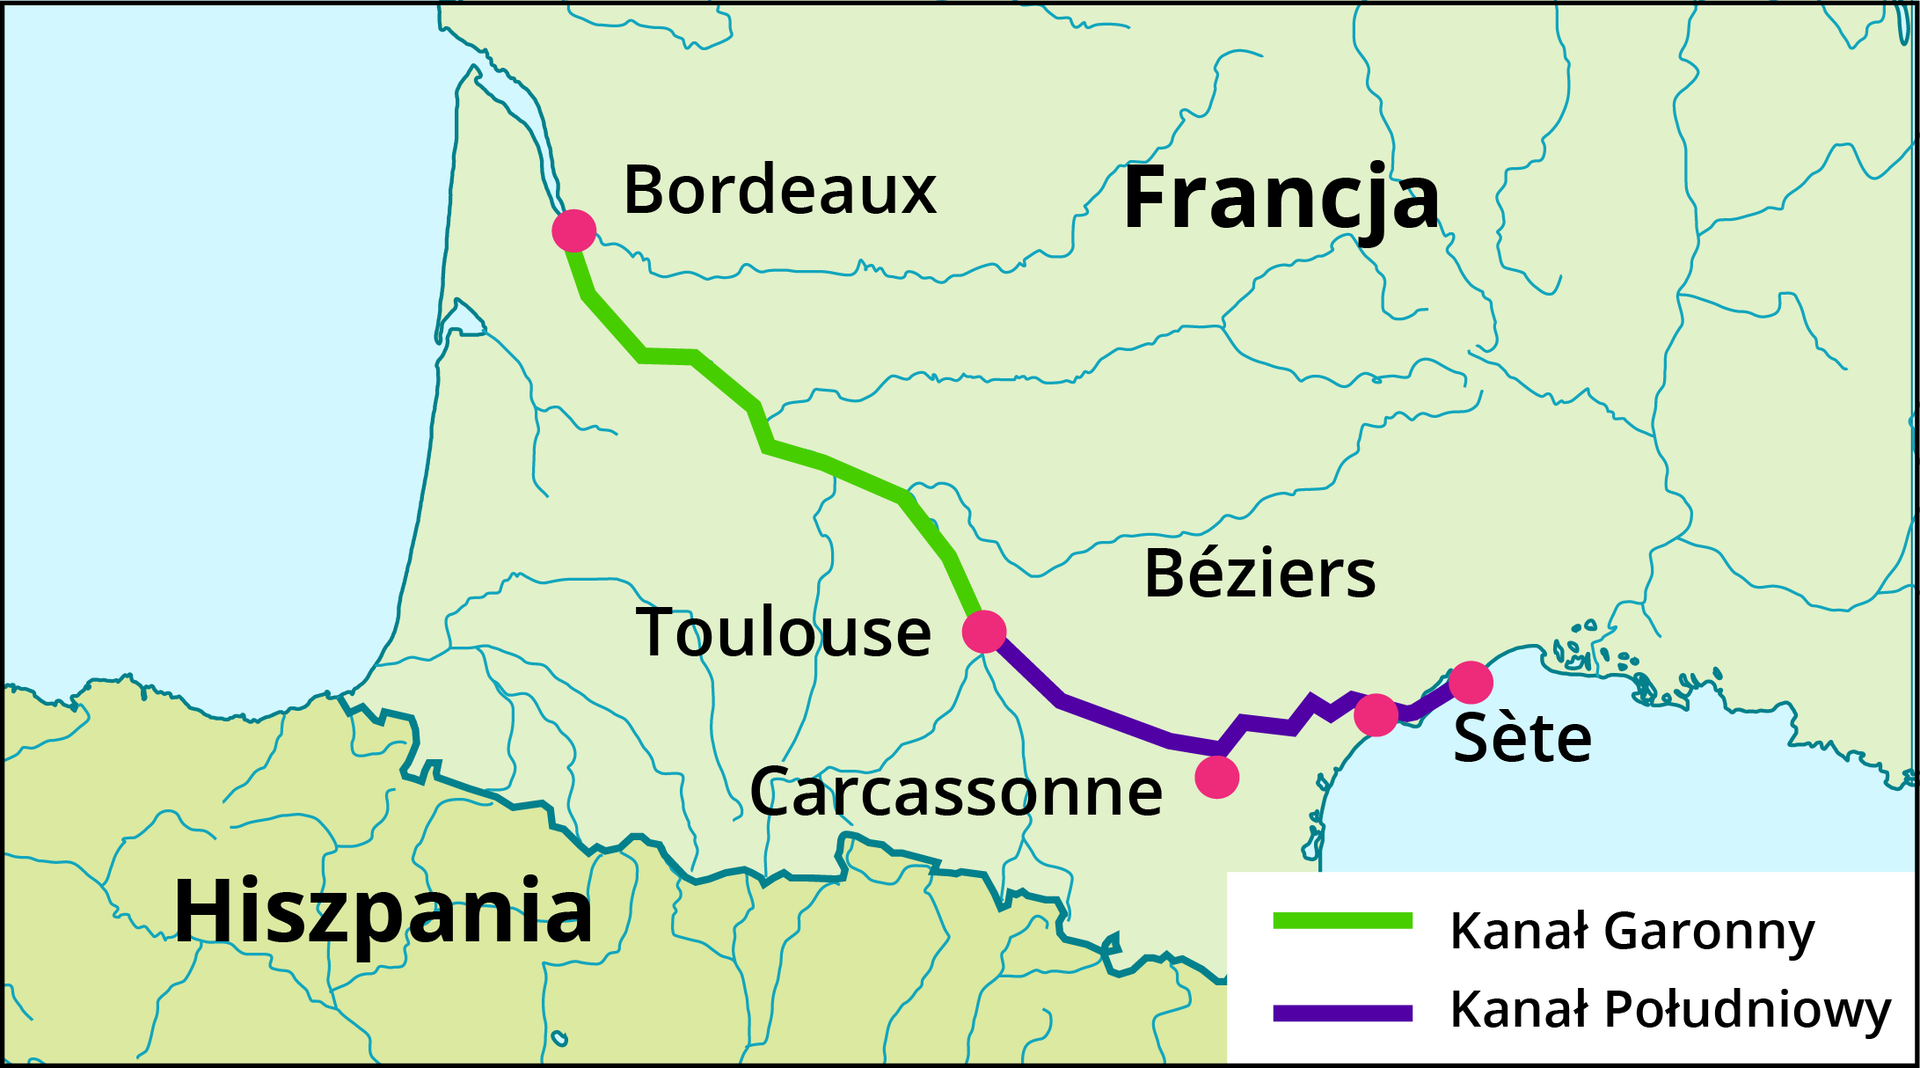 Ilustracja przedstawia mapę prezentującą trasę Kanału Południowego i Kanału Garonny - nowa droga wodna we Francji. Trasa przebiega od miasta Bordeaux do miasta Beziers oraz z miasta Beziers przez miasto Carcassonne do miasta Sete. 